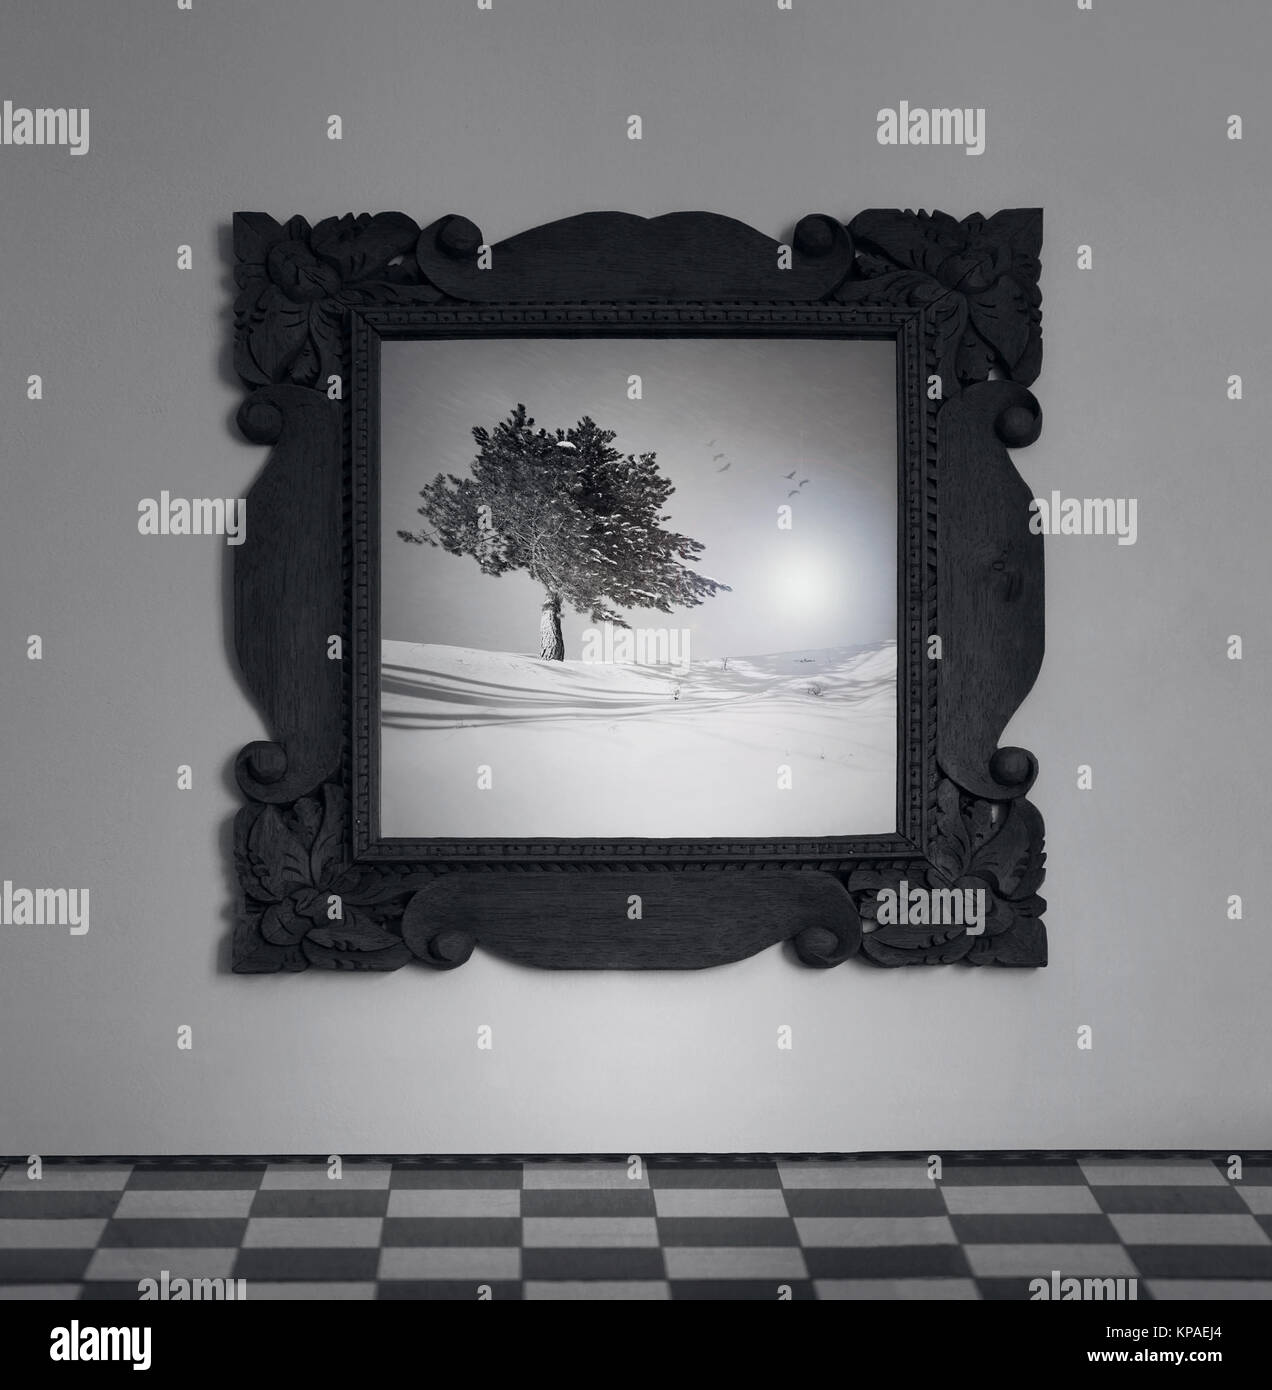 Detail aus einem Rahmen, Spiegel an der Wand mit einem Bild von einem Baum auf dem Schnee in Schwarz und Weiß Stockfoto